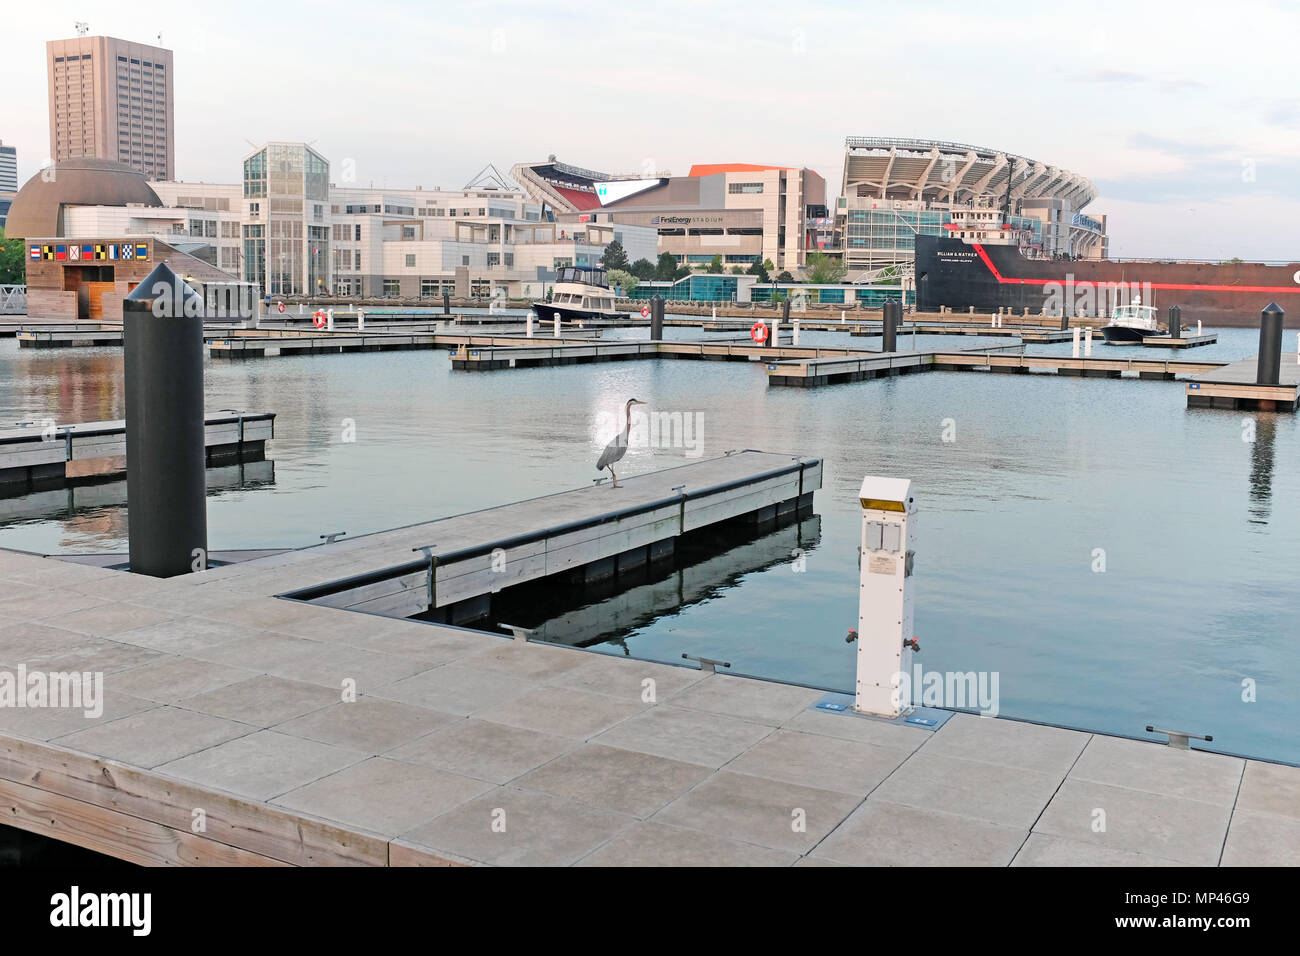 Un héron se dresse sur un bateau vide à Cleveland port avec une vue partielle sur le centre-ville de Cleveland skyline en arrière-plan. Banque D'Images